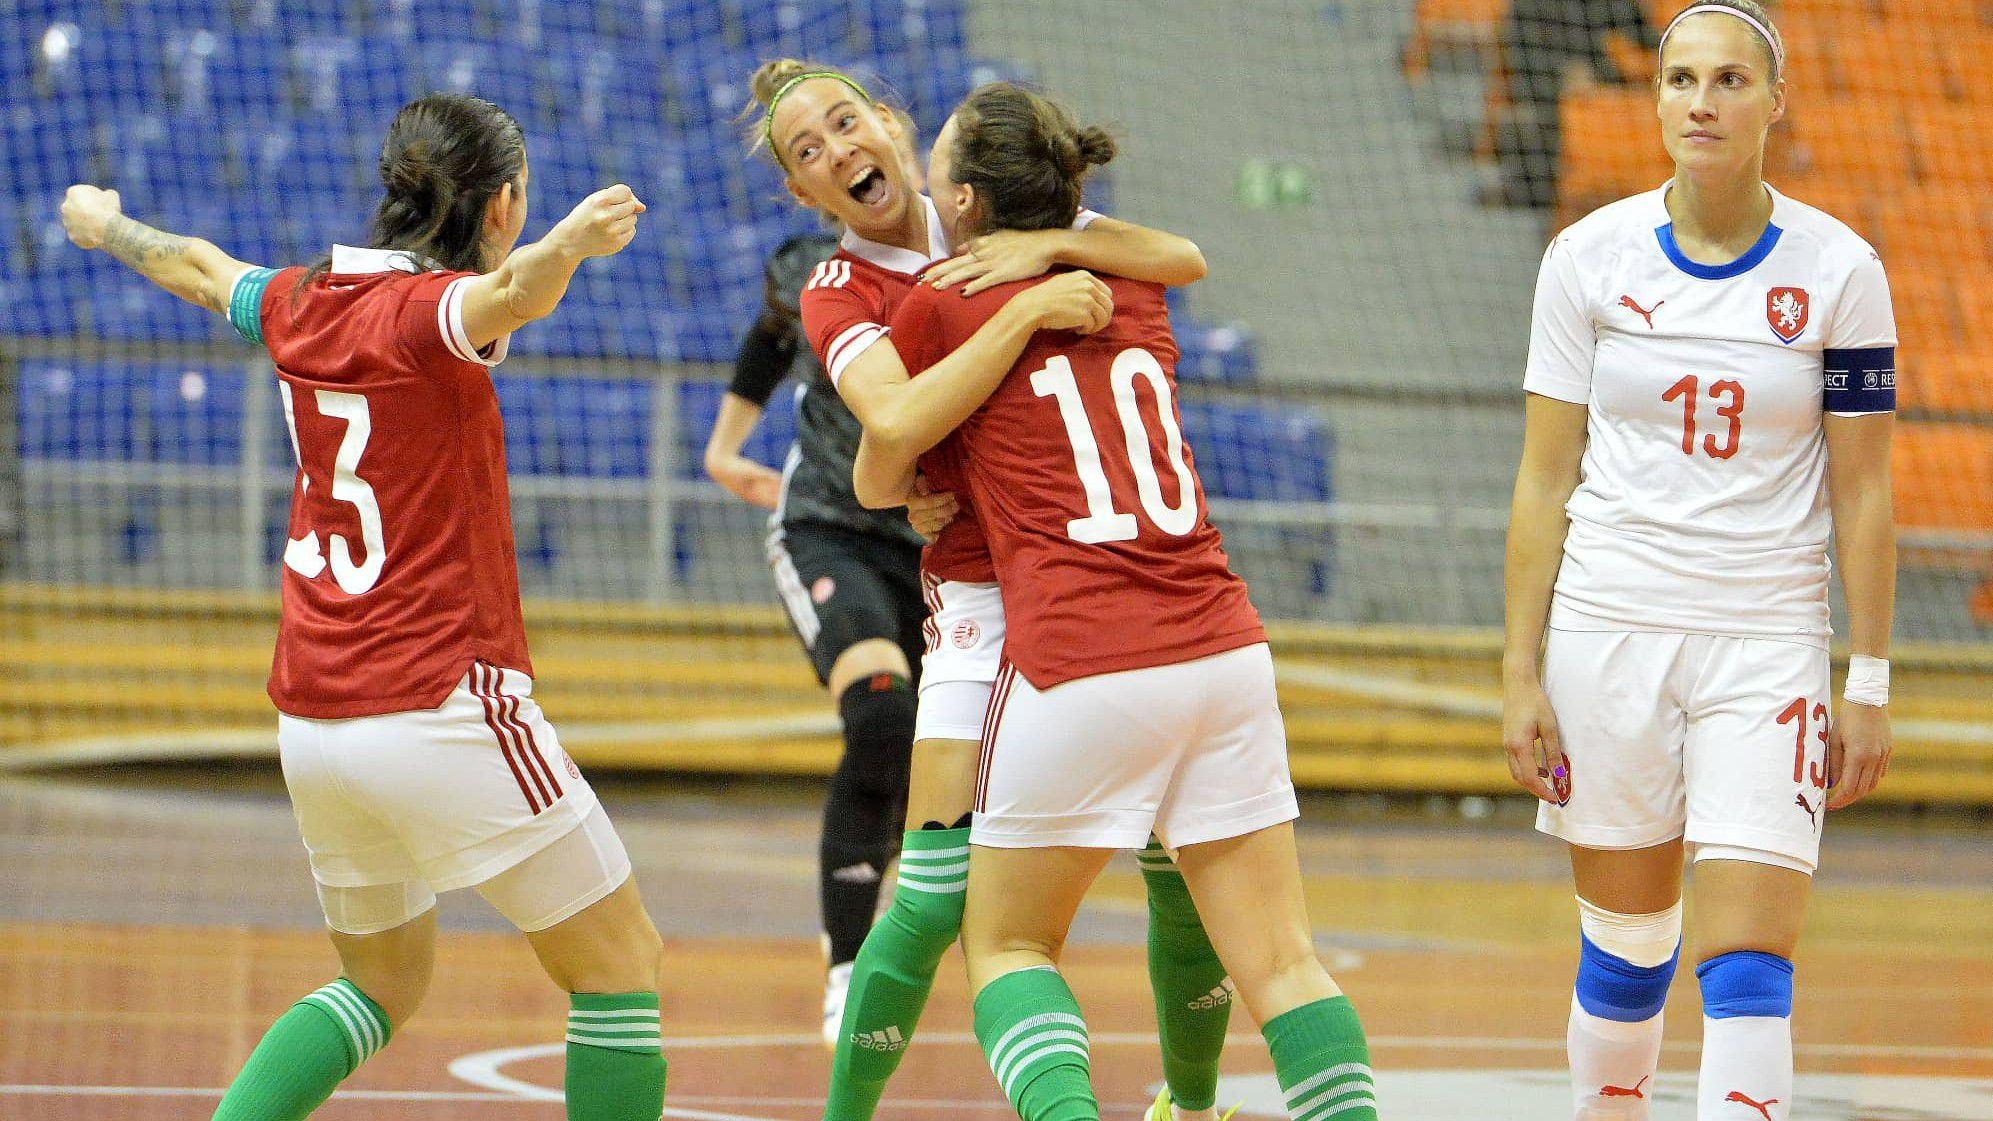 Nagy siker, a magyar női futsalválogatott ismét kijutott az Európa-bajnokságra (Fotó: Twitter/MLSZ)